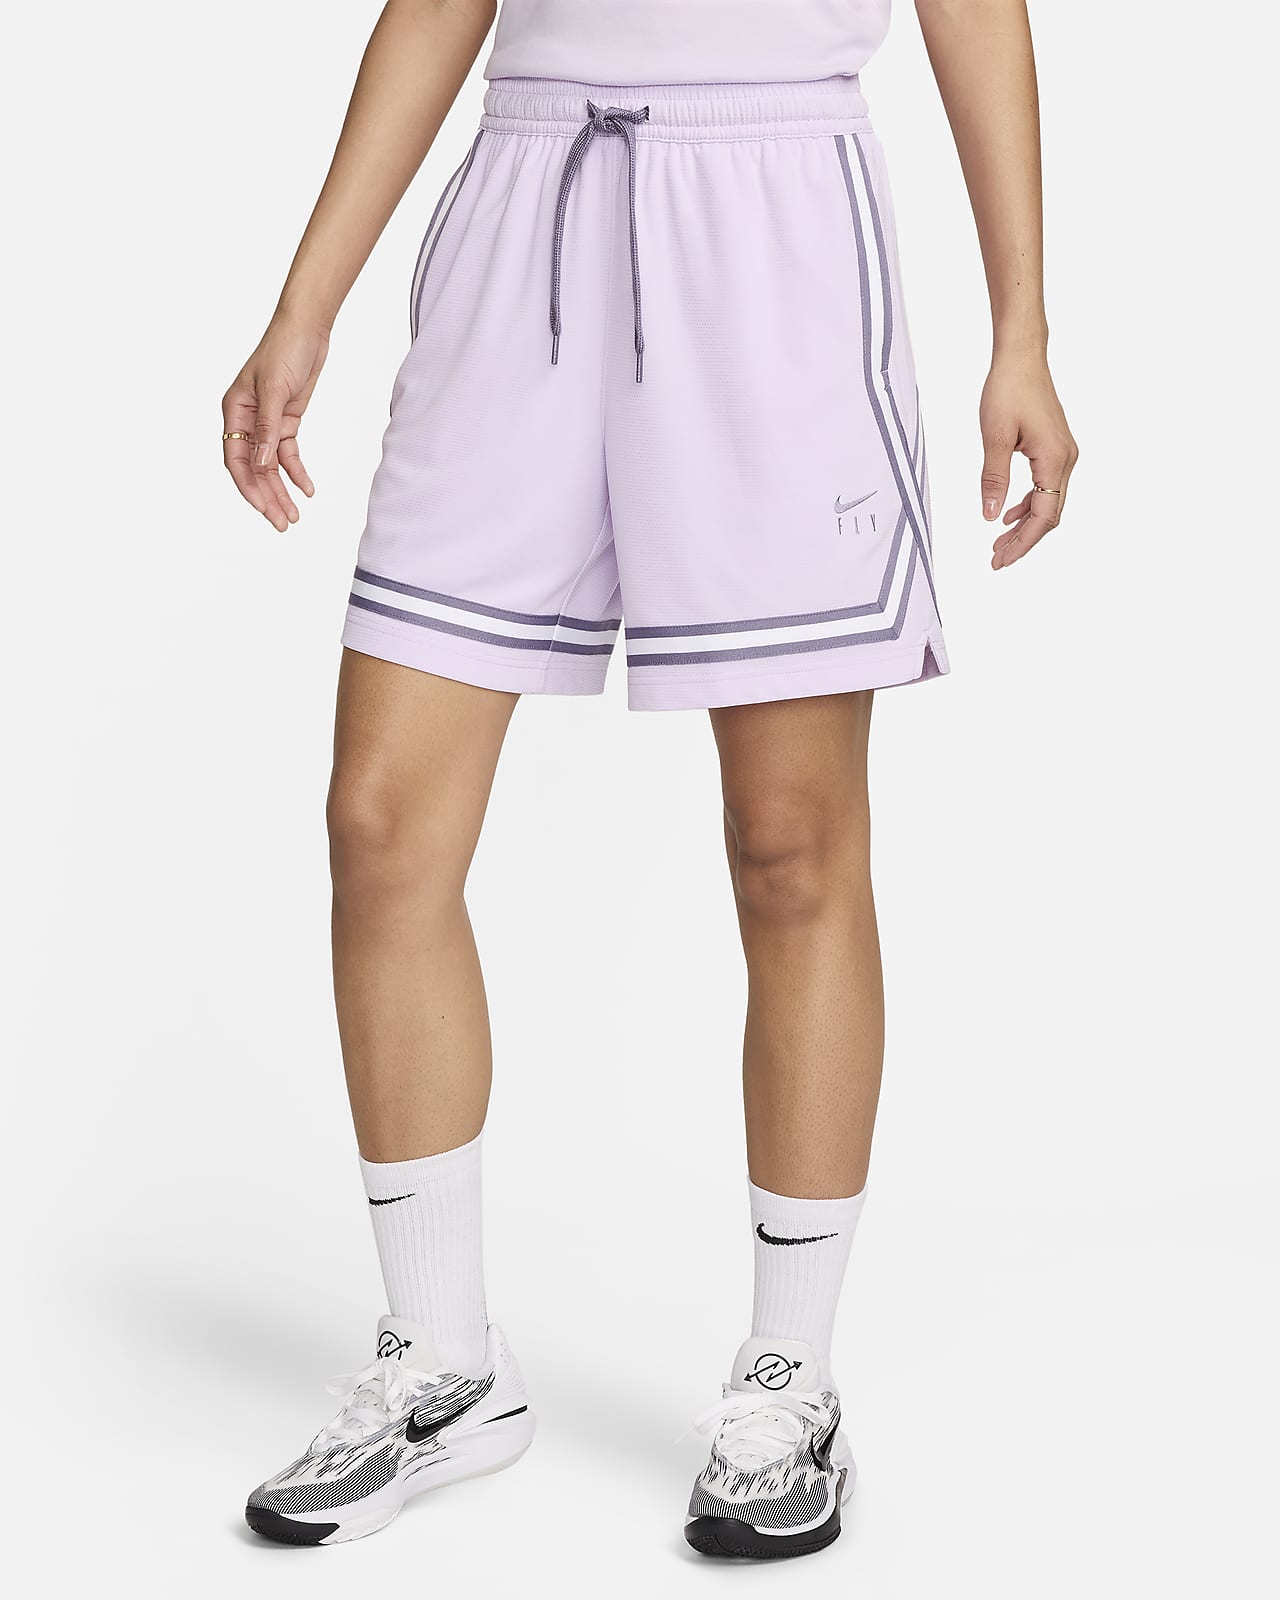 Shorts Nike Fly Crossover Feminino - Compre Agora